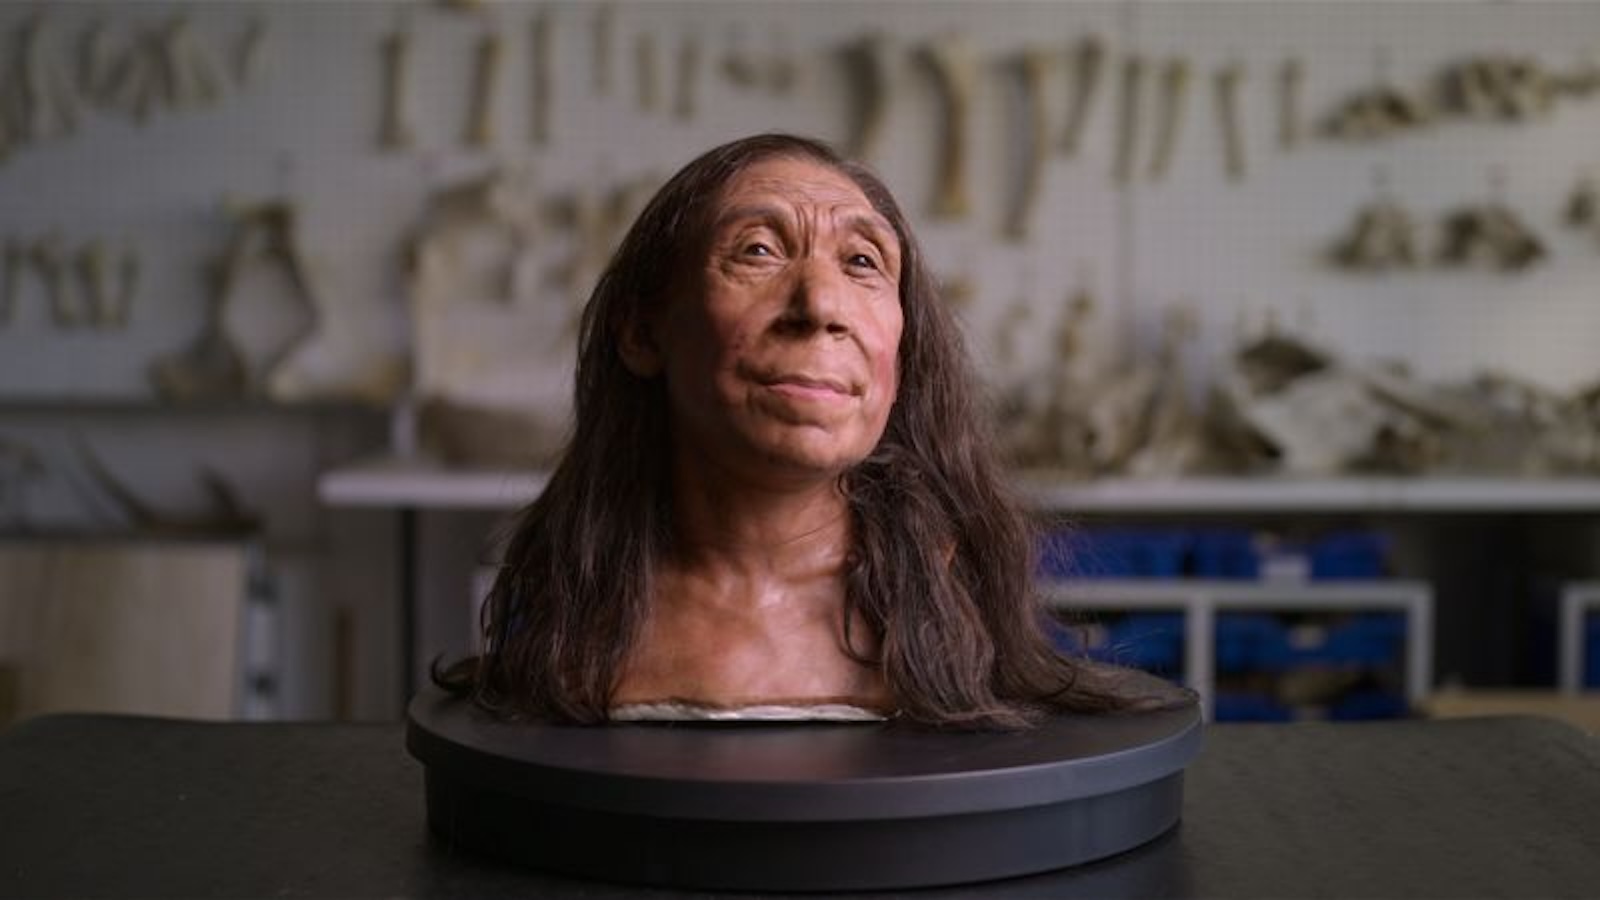 Científicos revelan el rostro de un neandertal que vivió hace 75.000 años